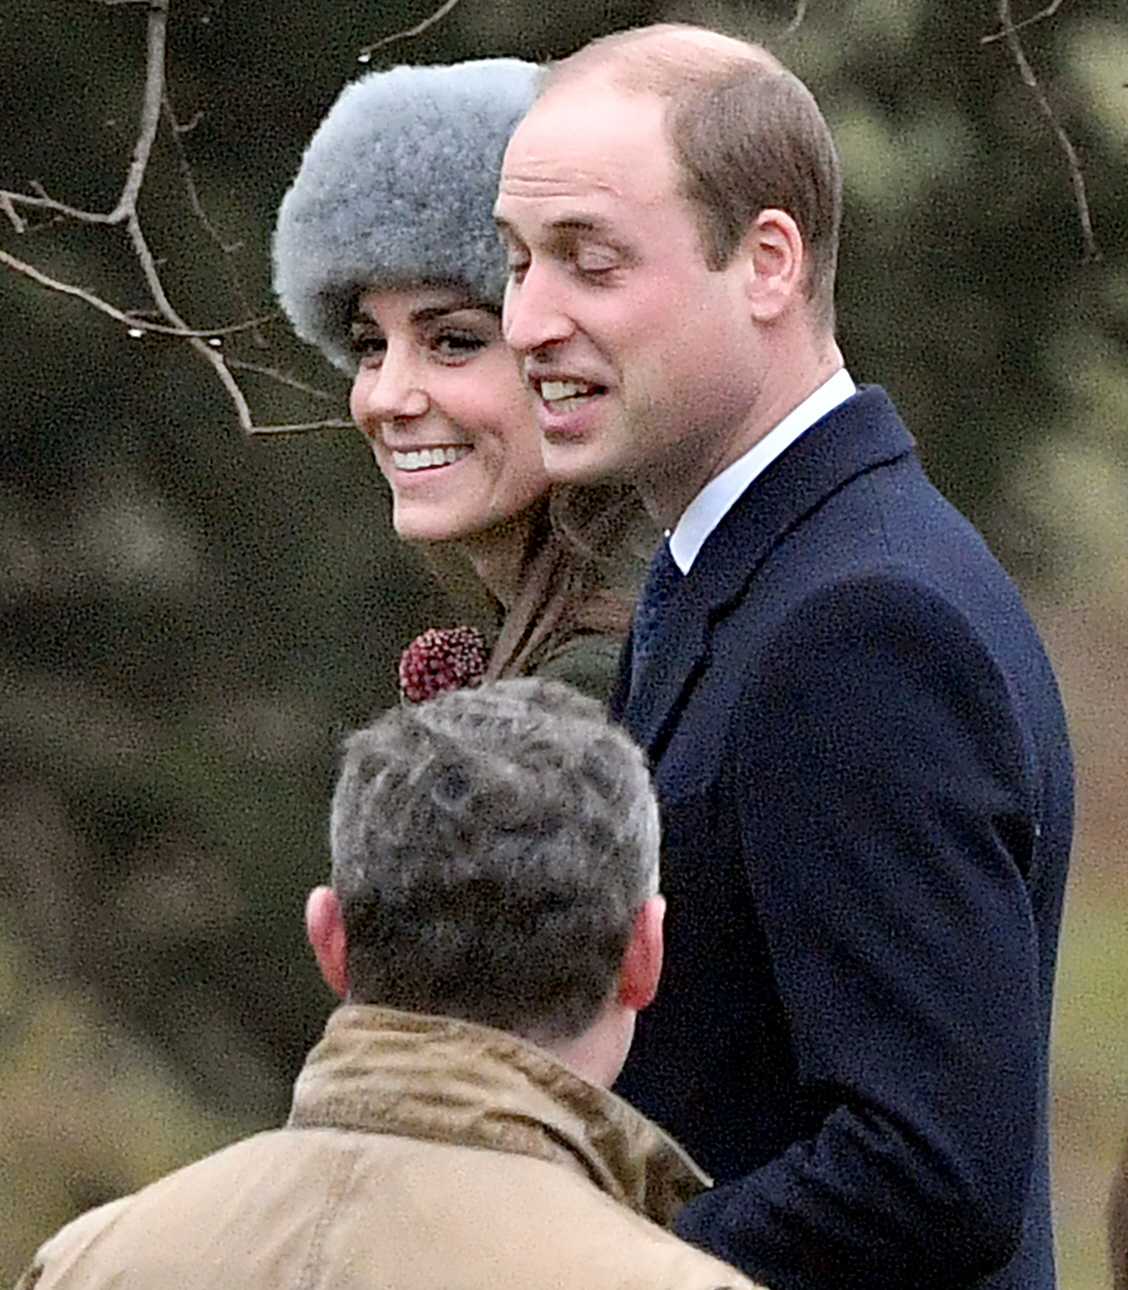 Герцогиня Кейт привела свою семью в Квинс впервые за несколько недель